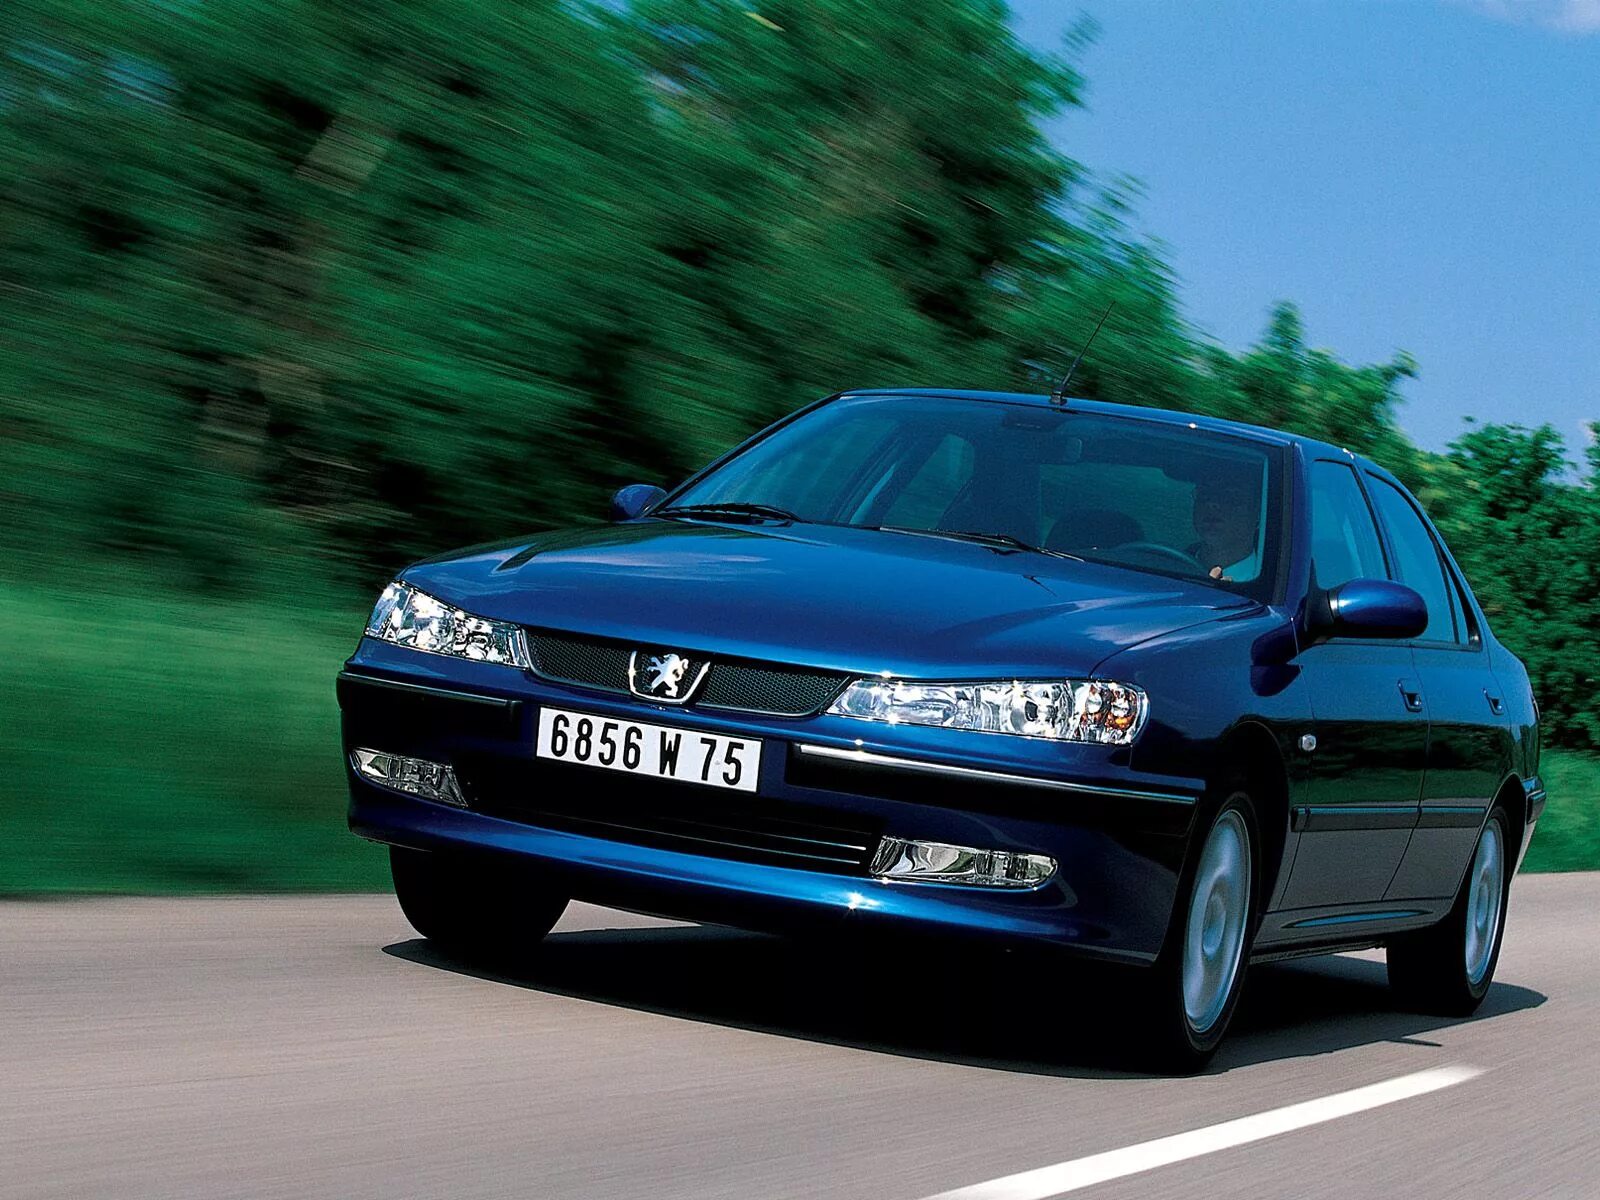 Peugeot 406 седан 1999-2004. Пежо 406 седан. Пежо 406 Рестайлинг. 406 Пежо 406. Купить пежо 406 седан